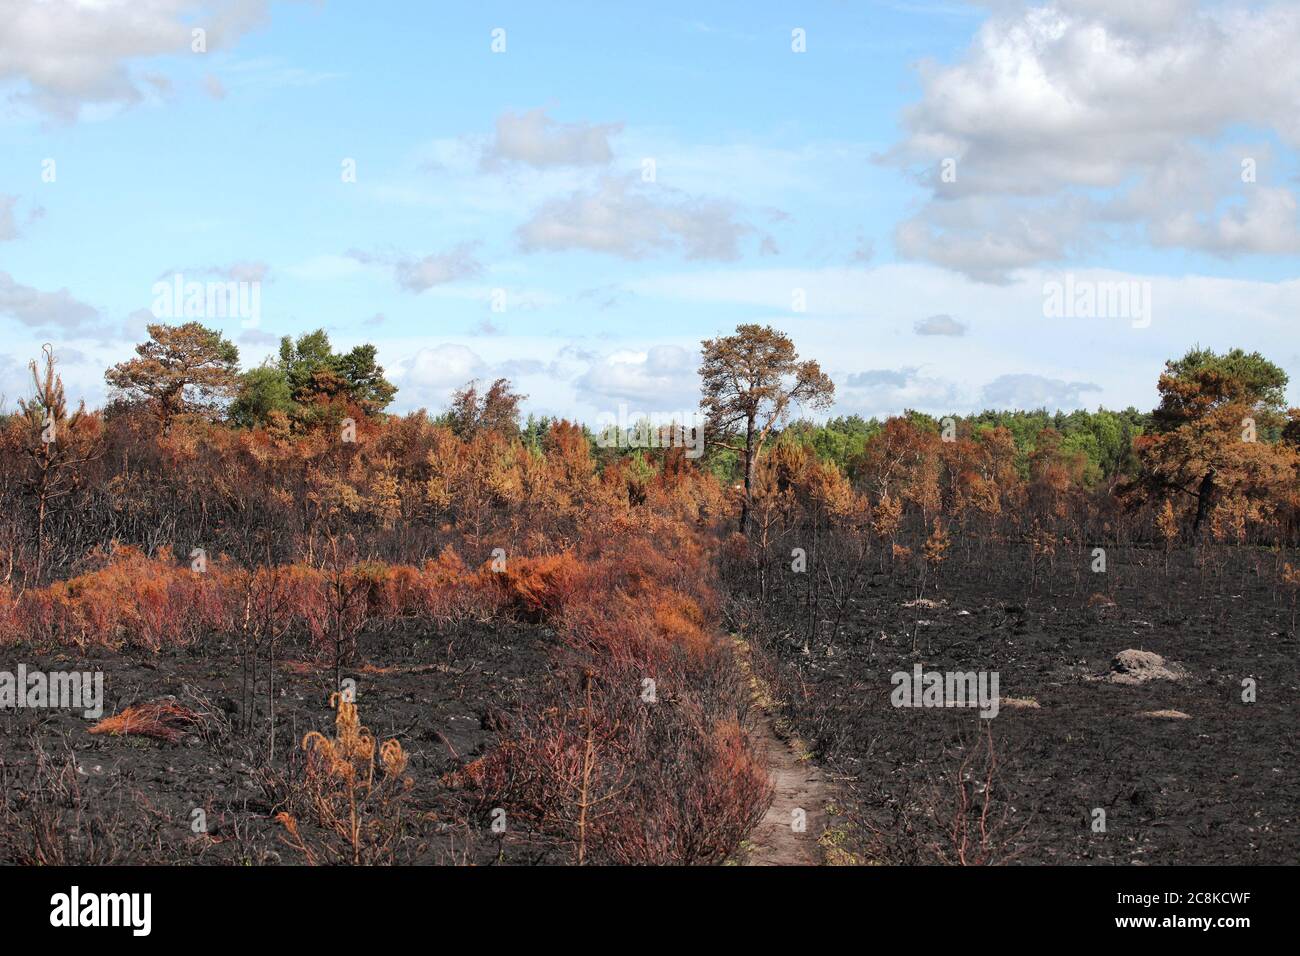 Le conseguenze del Thurley comune fuoco selvatico che ha bruciato 150 ettari di brughiera protetta nel giugno 2020, Surrey, Regno Unito. Foto Stock